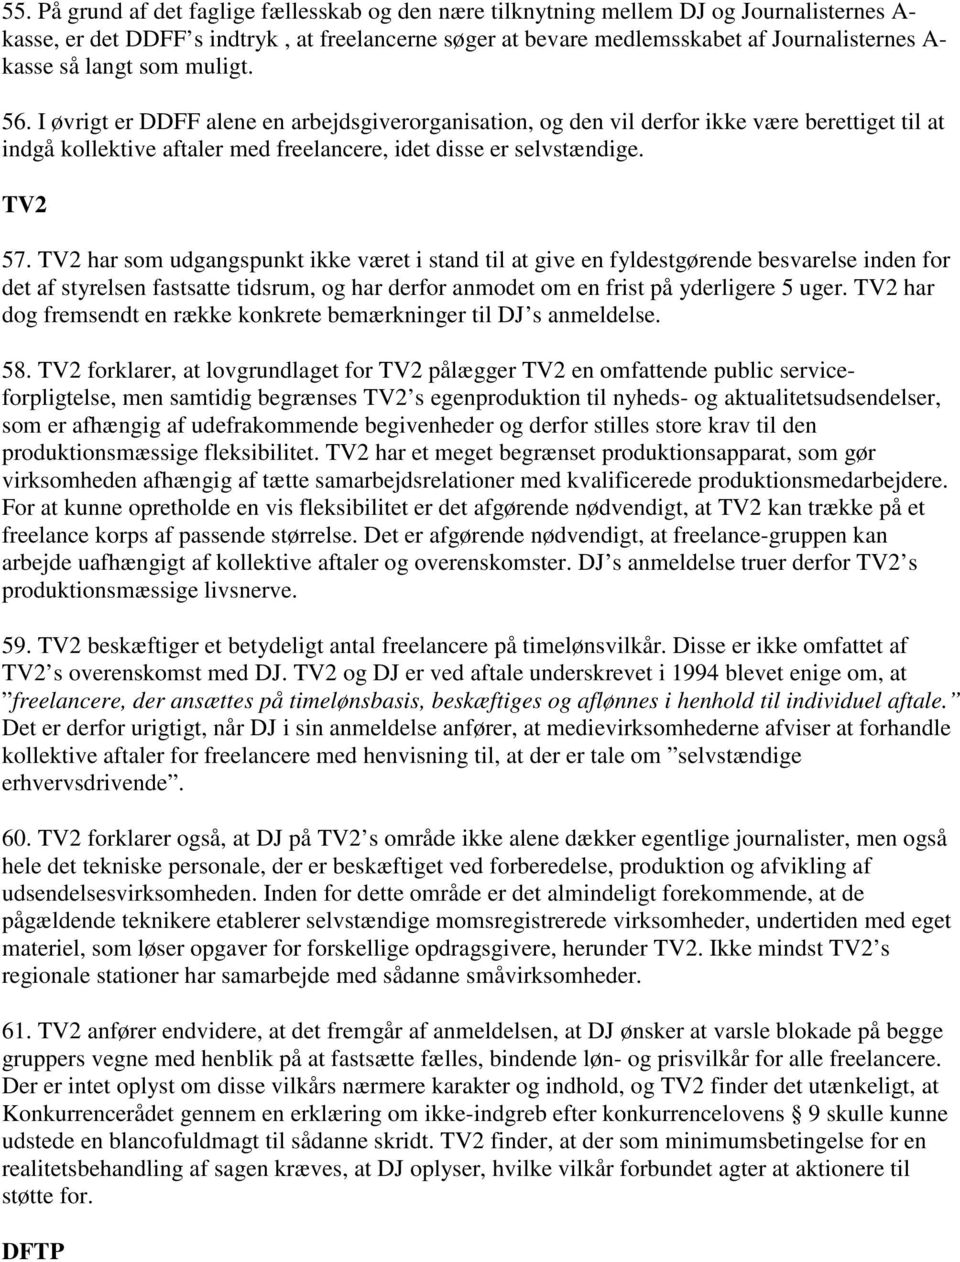 TV2 har som udgangspunkt ikke været i stand til at give en fyldestgørende besvarelse inden for det af styrelsen fastsatte tidsrum, og har derfor anmodet om en frist på yderligere 5 uger.